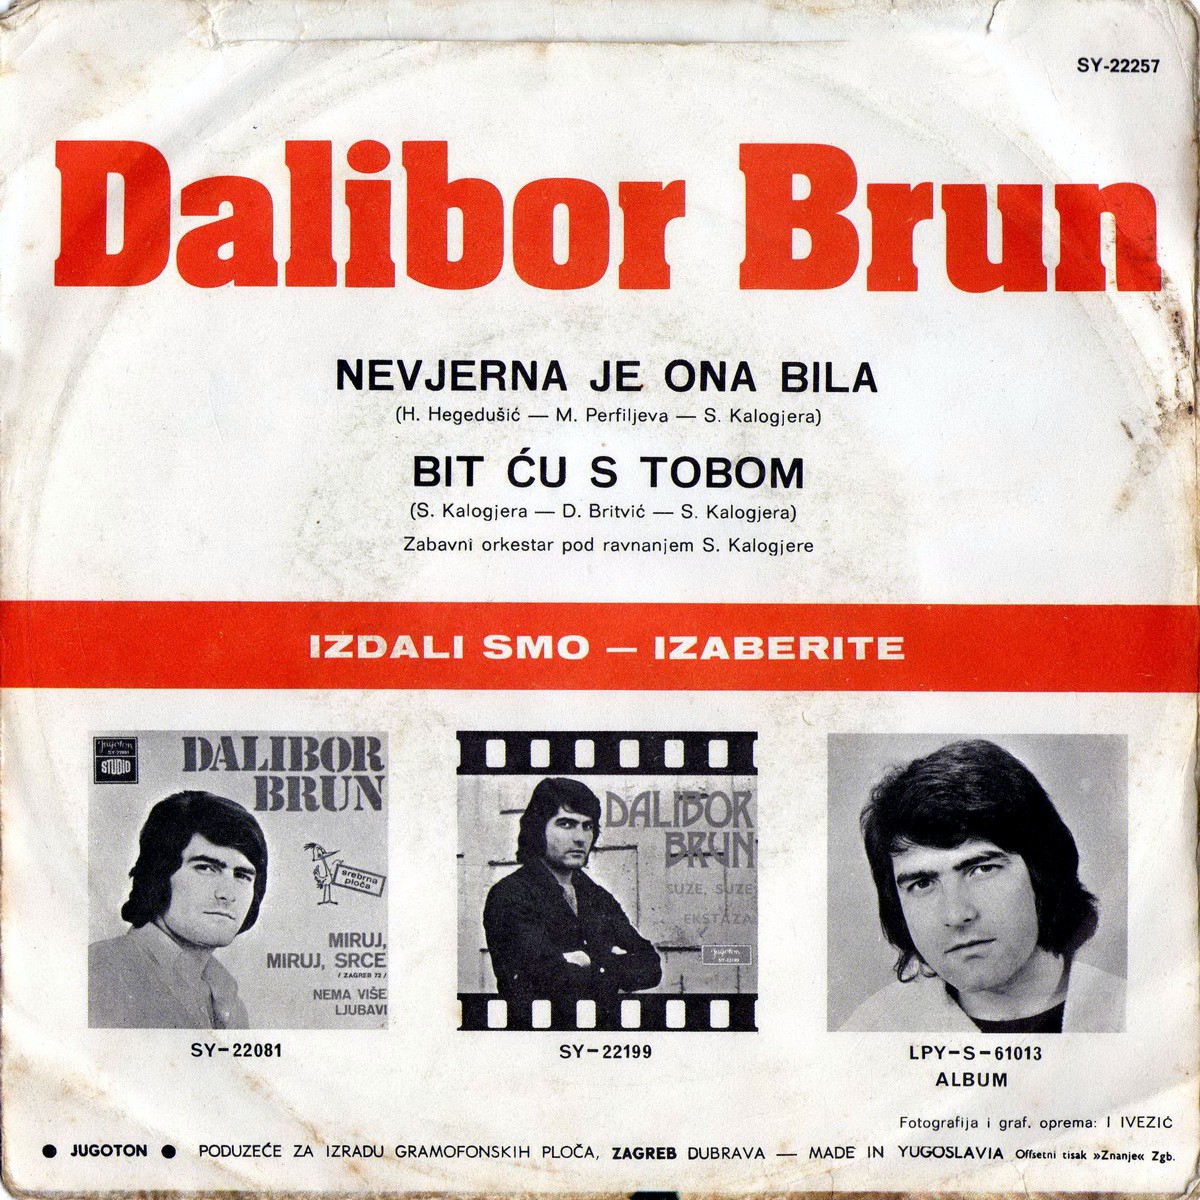 Dalibor Brun 1973 Nevjerna je ona bila b